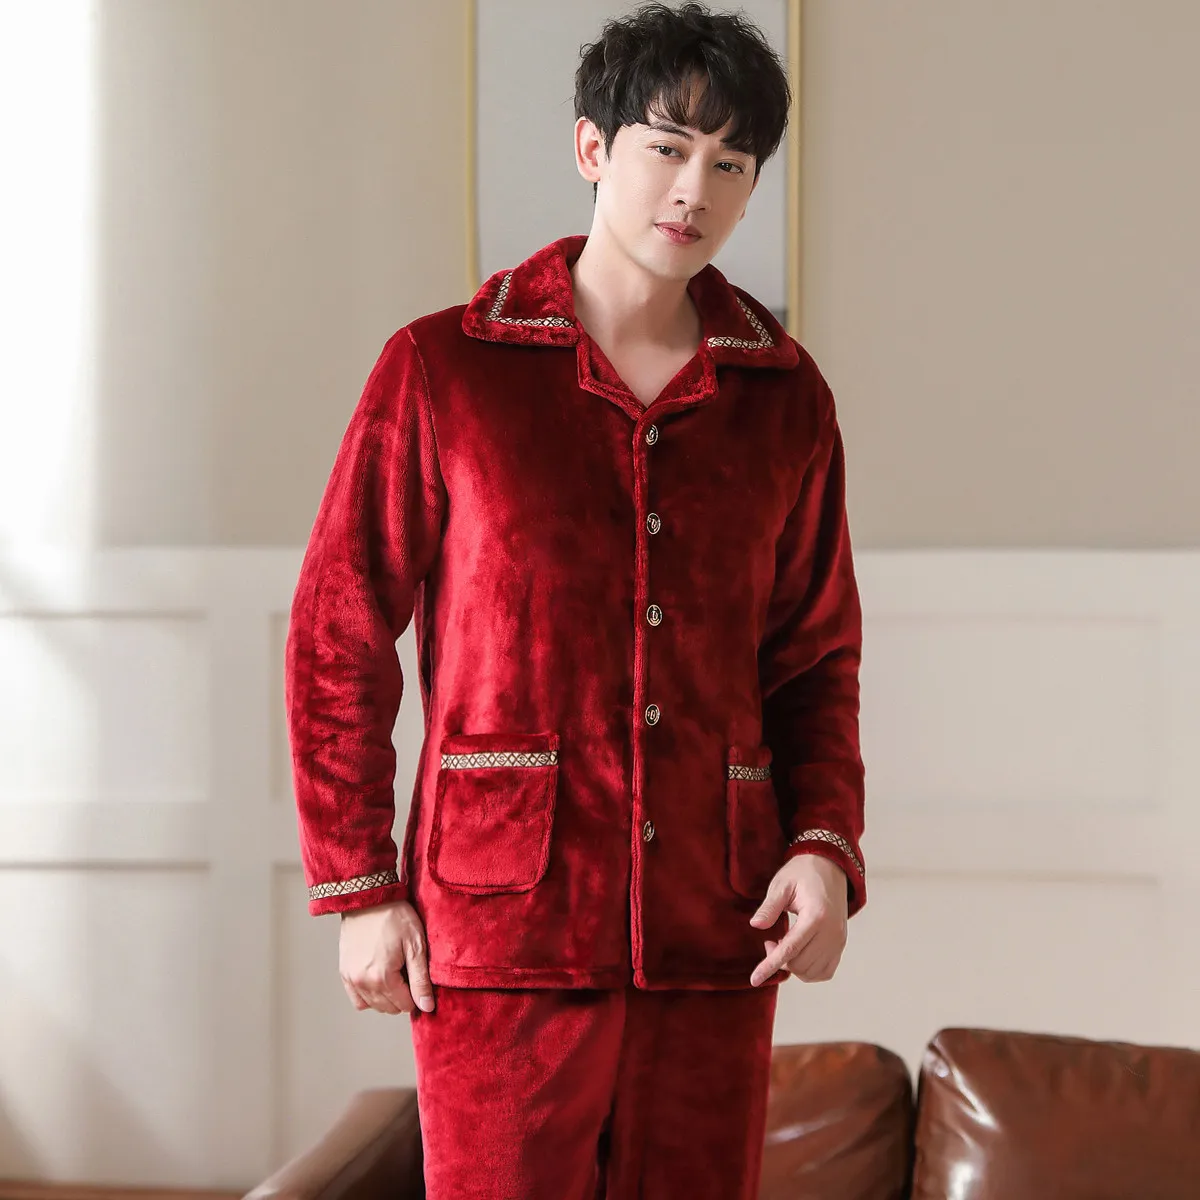 Утолщенная Фланелевая пижама, мужской красный пижамный комплект, одежда для сна с длинным рукавом, пижама, Пижамный костюм, мужской комплек...